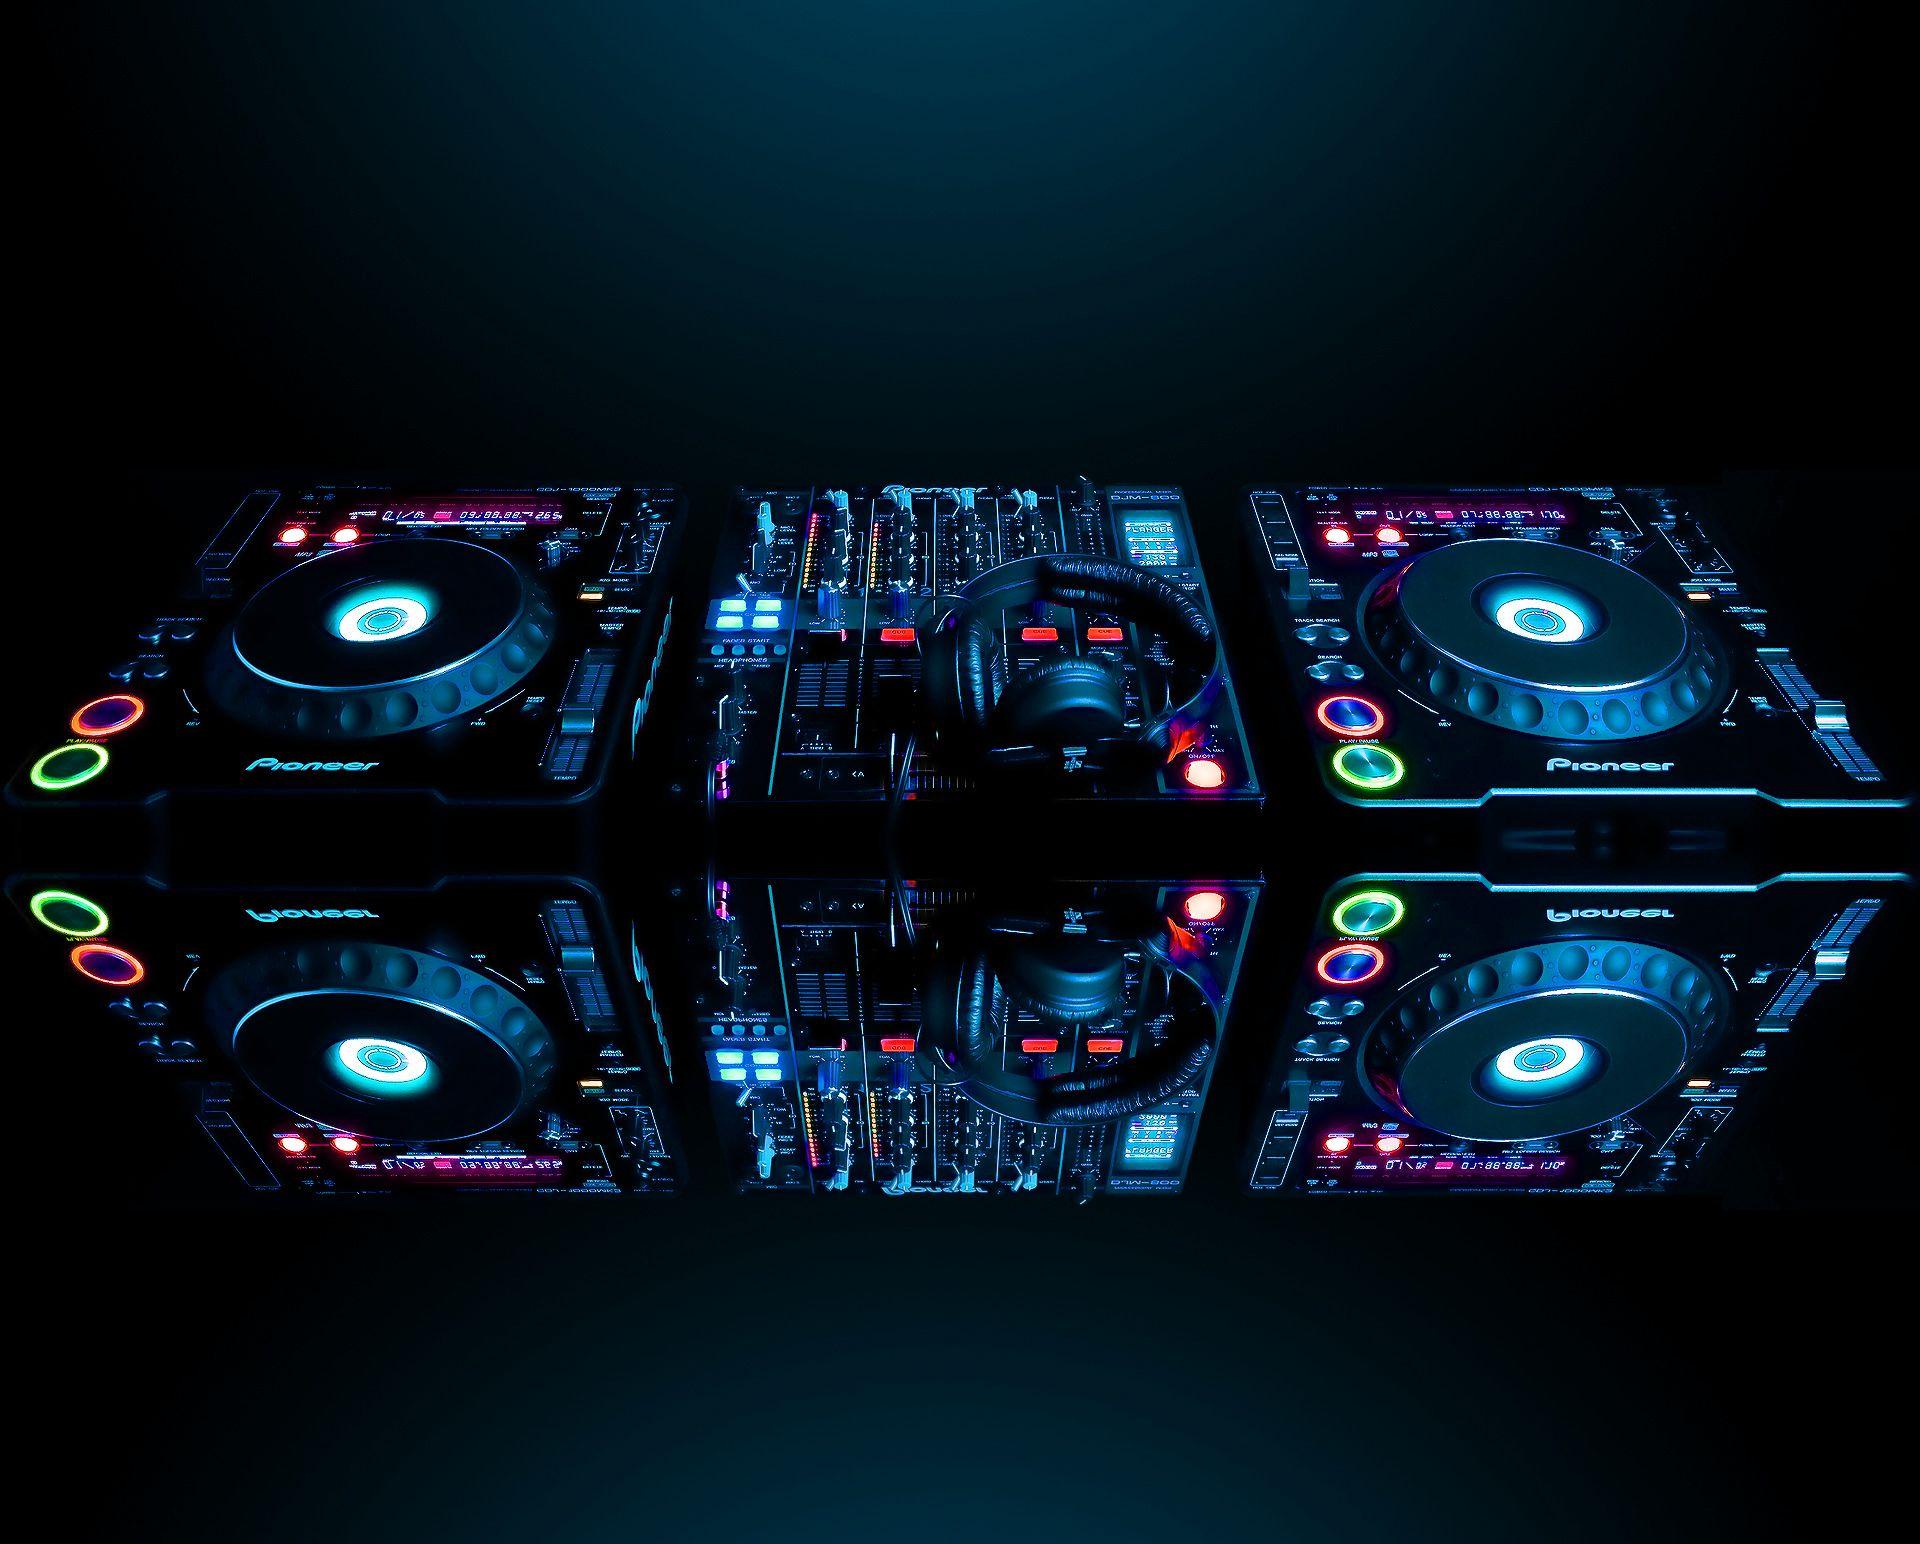 Khám phá hình nền Turntable Pioneer đẹp mắt và chuyên nghiệp. Nó là lựa chọn hoàn hảo cho các DJ chuyên nghiệp, hoặc cả những người yêu nhạc đam mê. Hãy tải ảnh về và trang trí màn hình của bạn để thêm phần chuyên nghiệp và “sành điệu”.